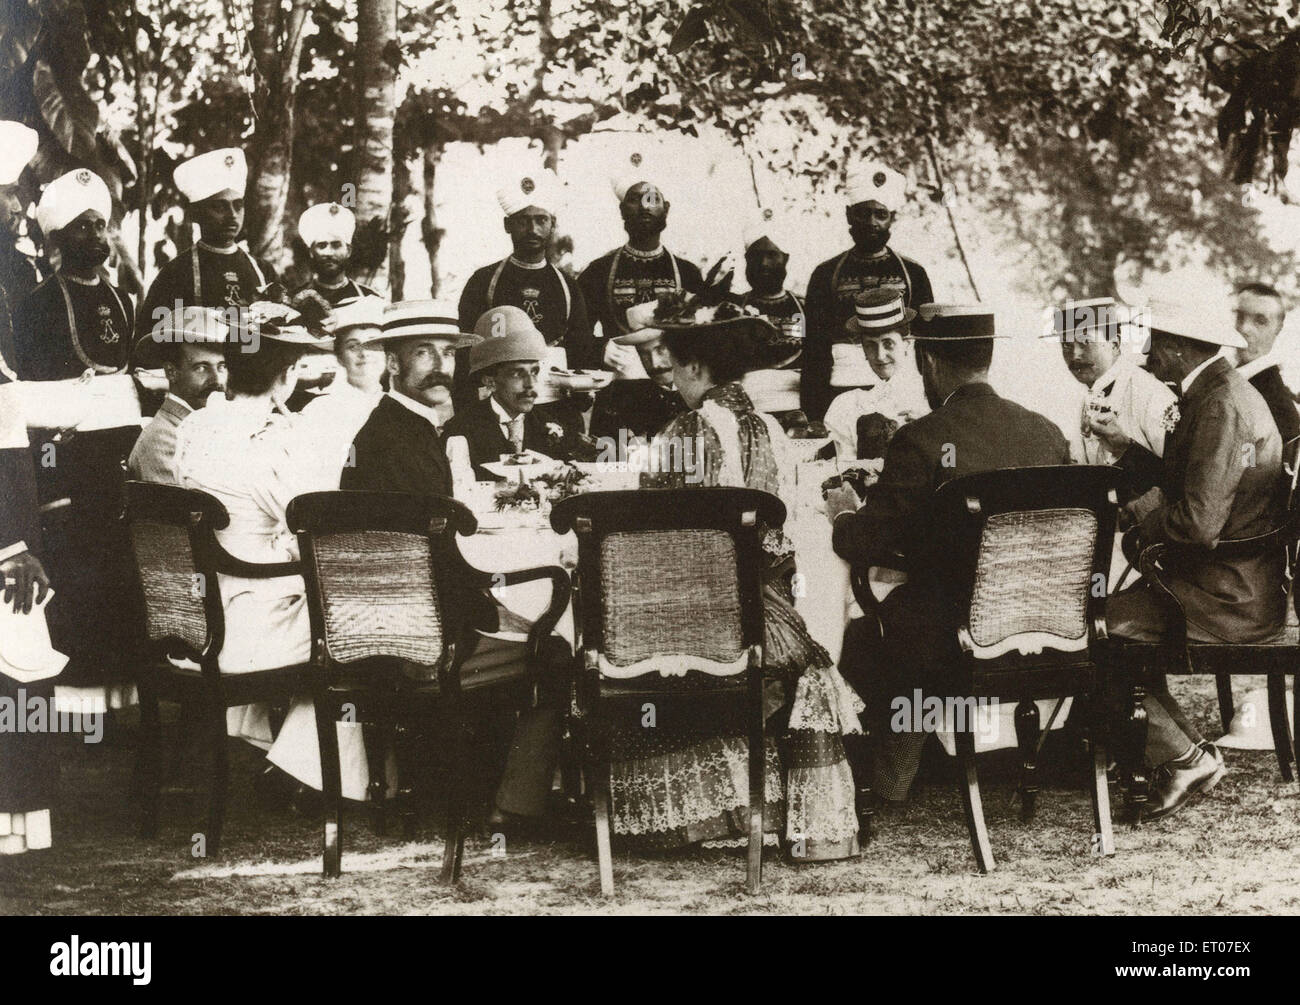 Hommes et femmes britanniques assis manger servis par des hommes indiens, Inde, Asie, Indien, asiatique, ancienne image vintage 1800s Banque D'Images